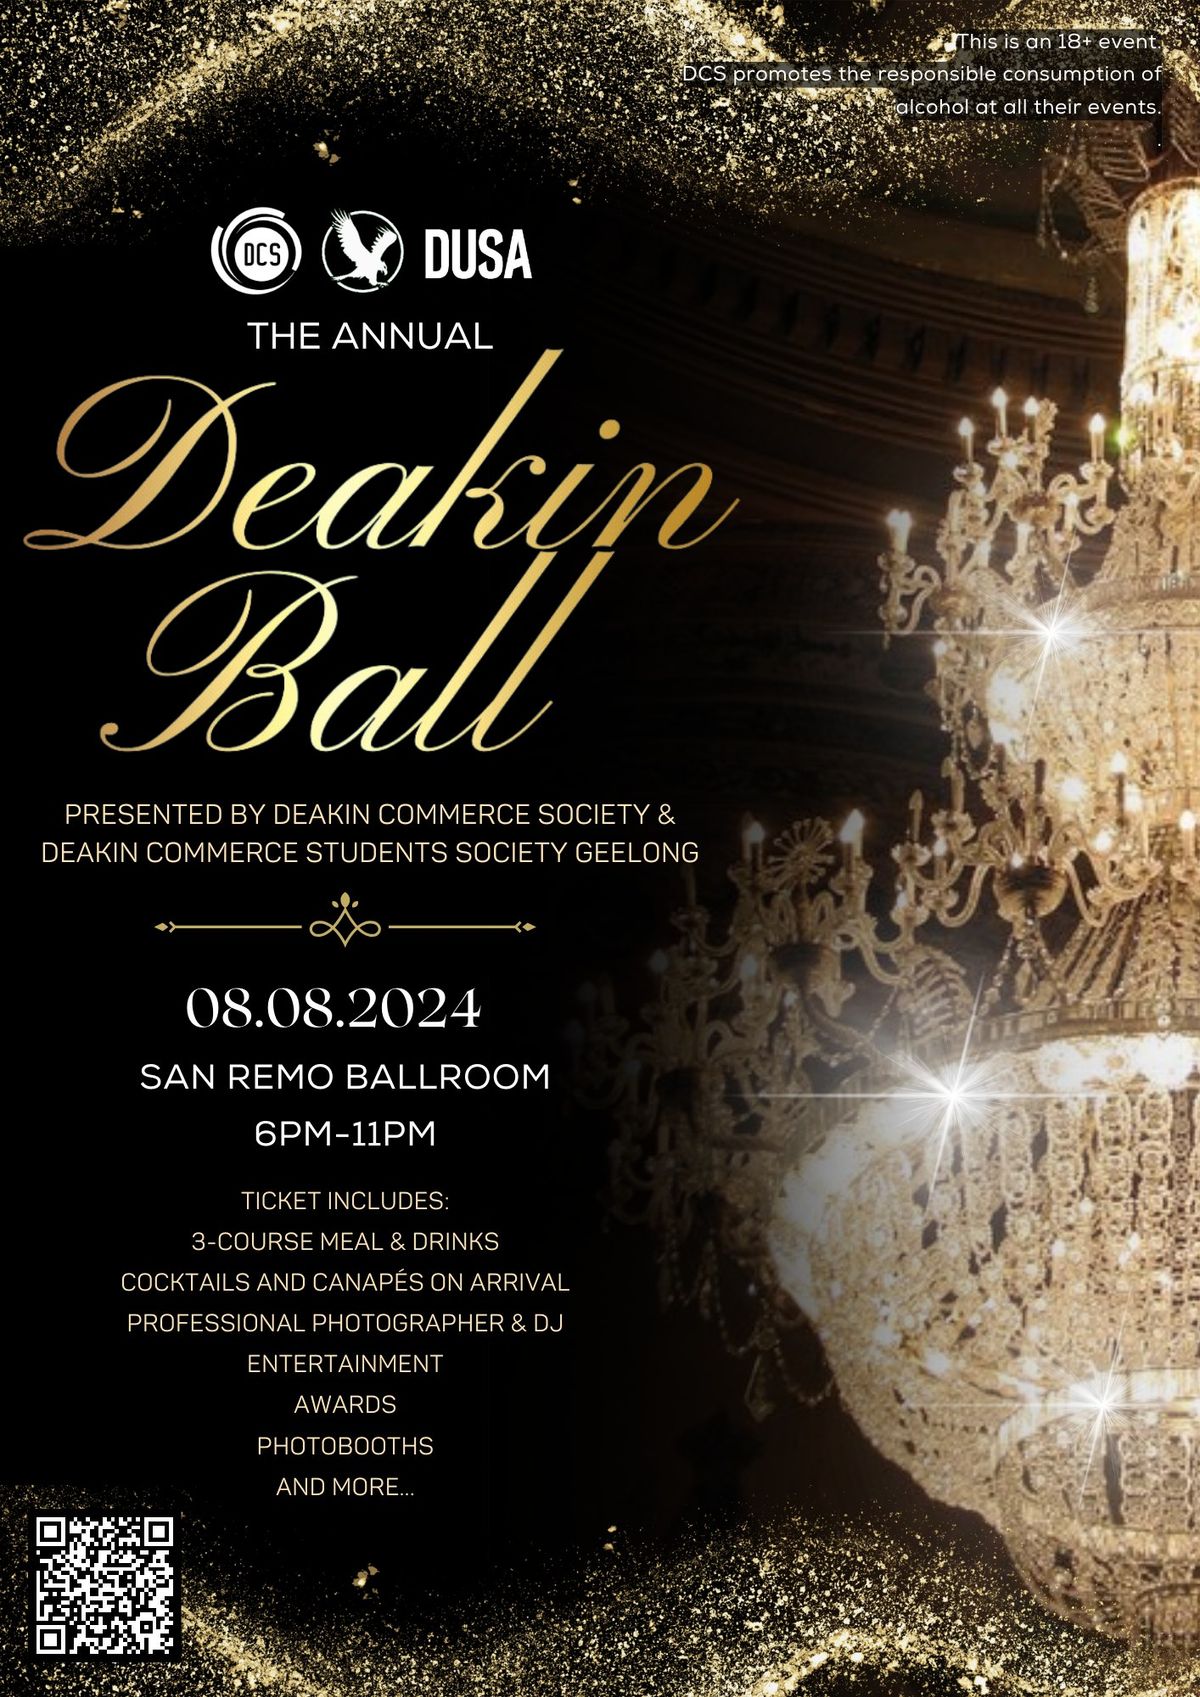 The Annual Deakin Ball